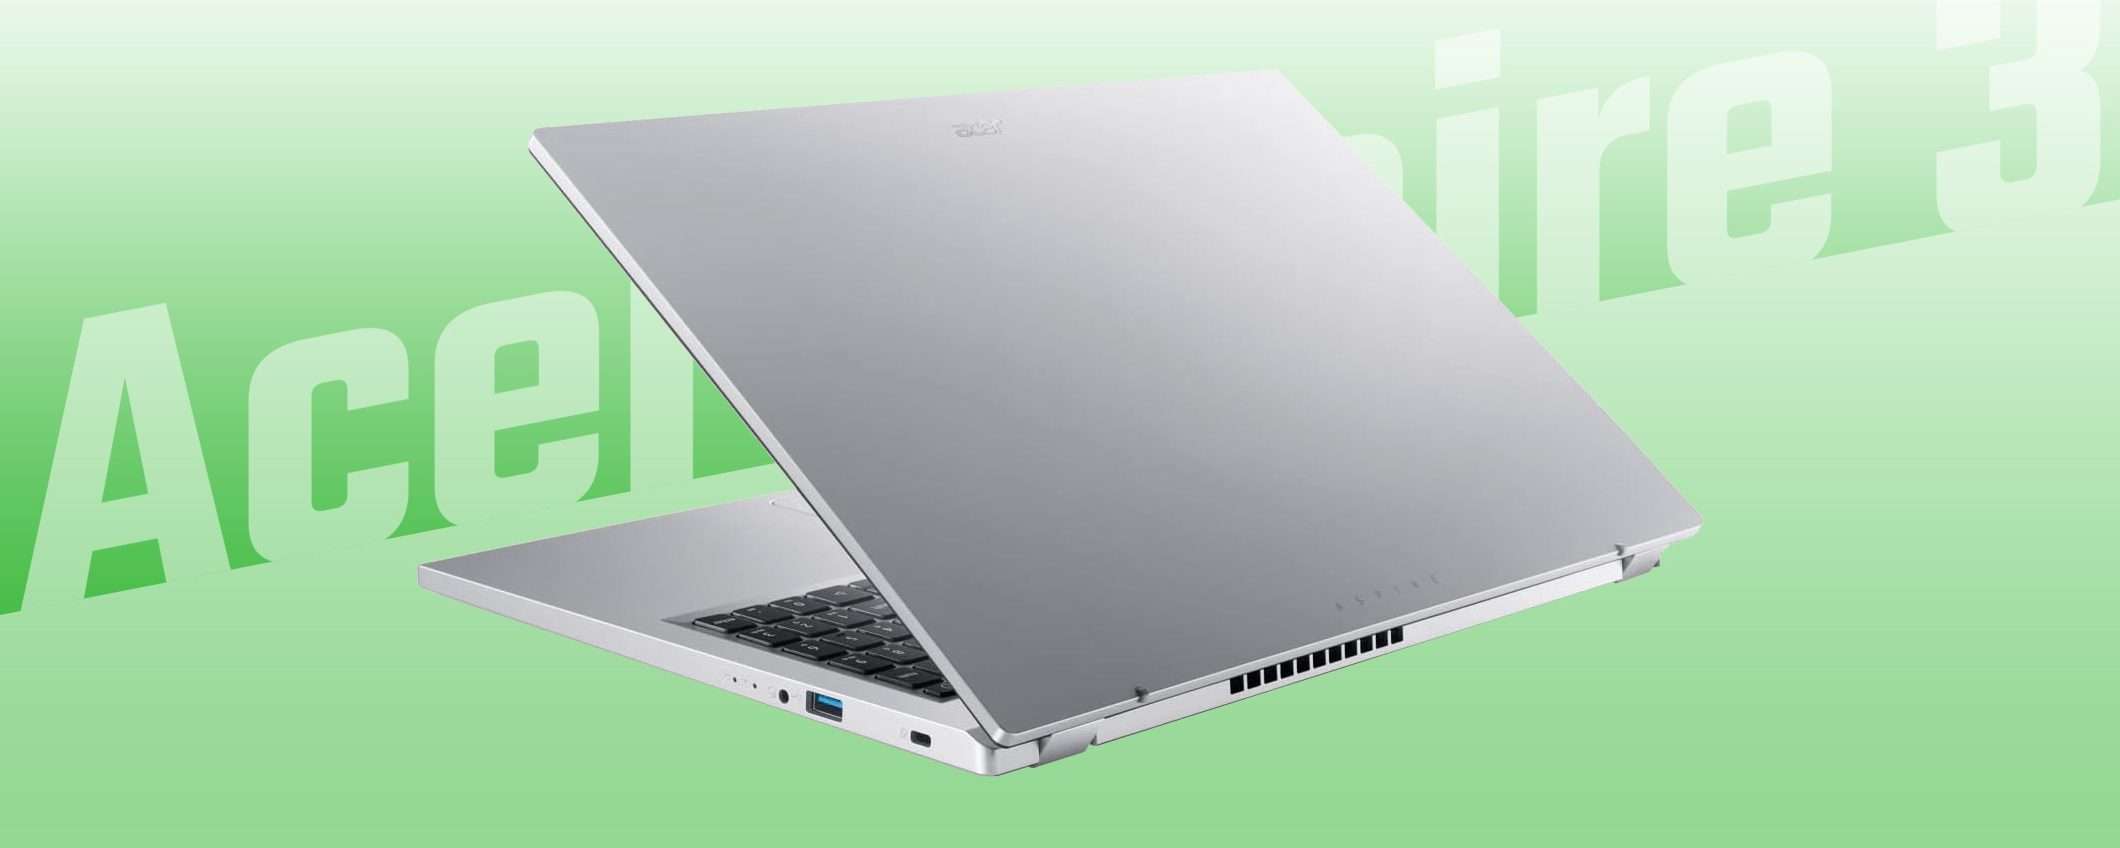 Notebook Acer (Ryzen, 8/512, Wi-Fi 6) a PREZZO STRACCIATO